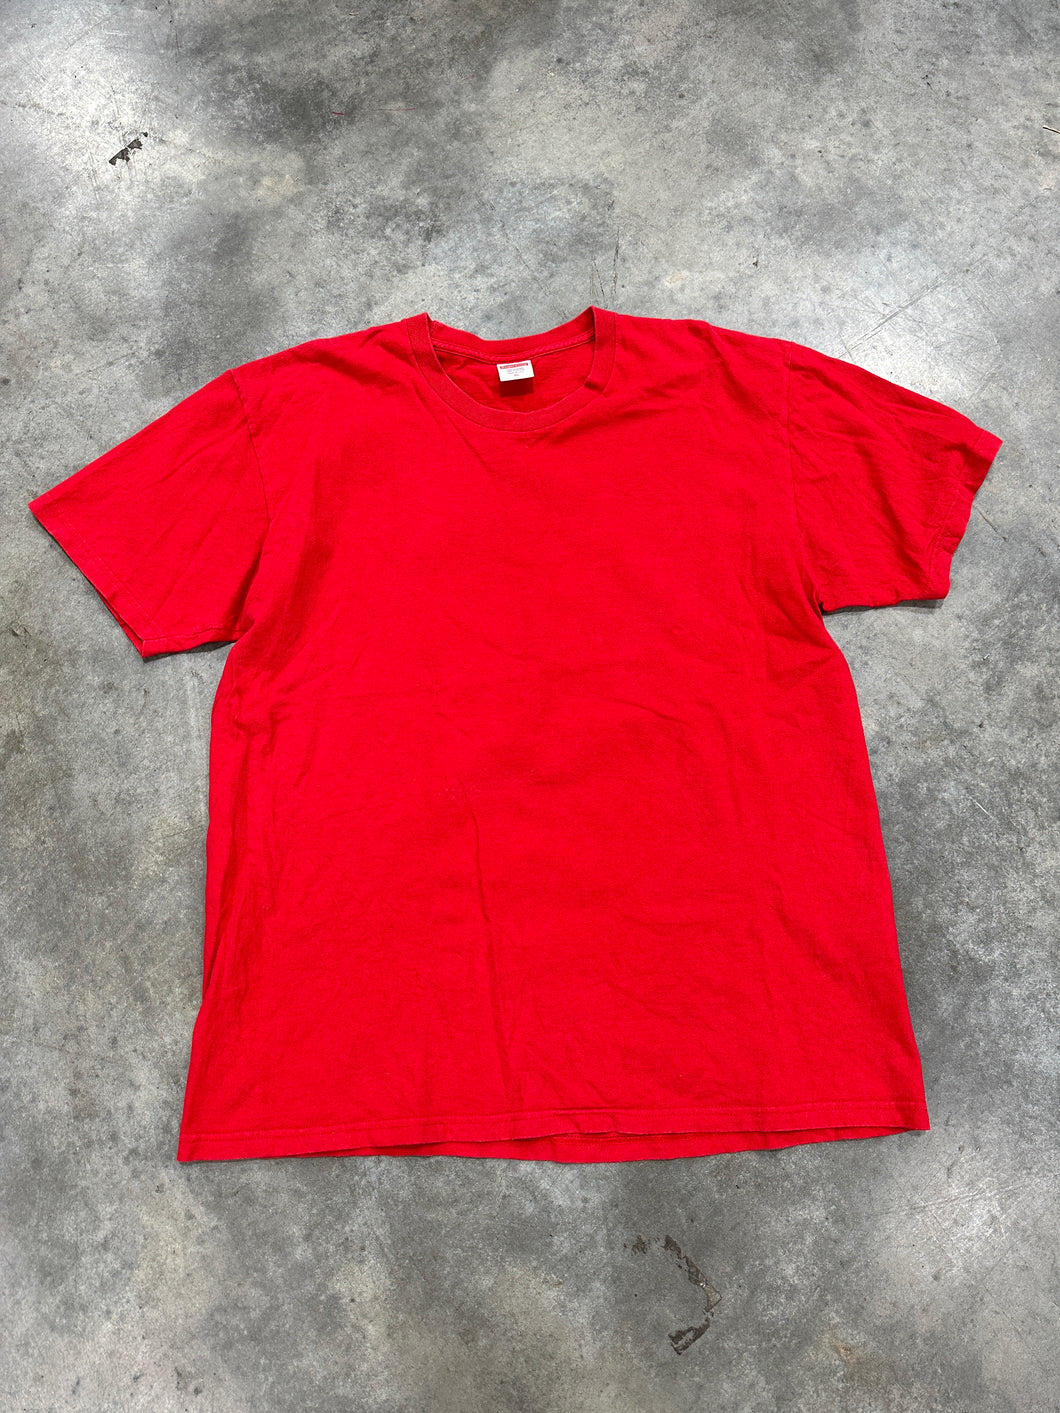 Supreme T-Shirt Sz XL